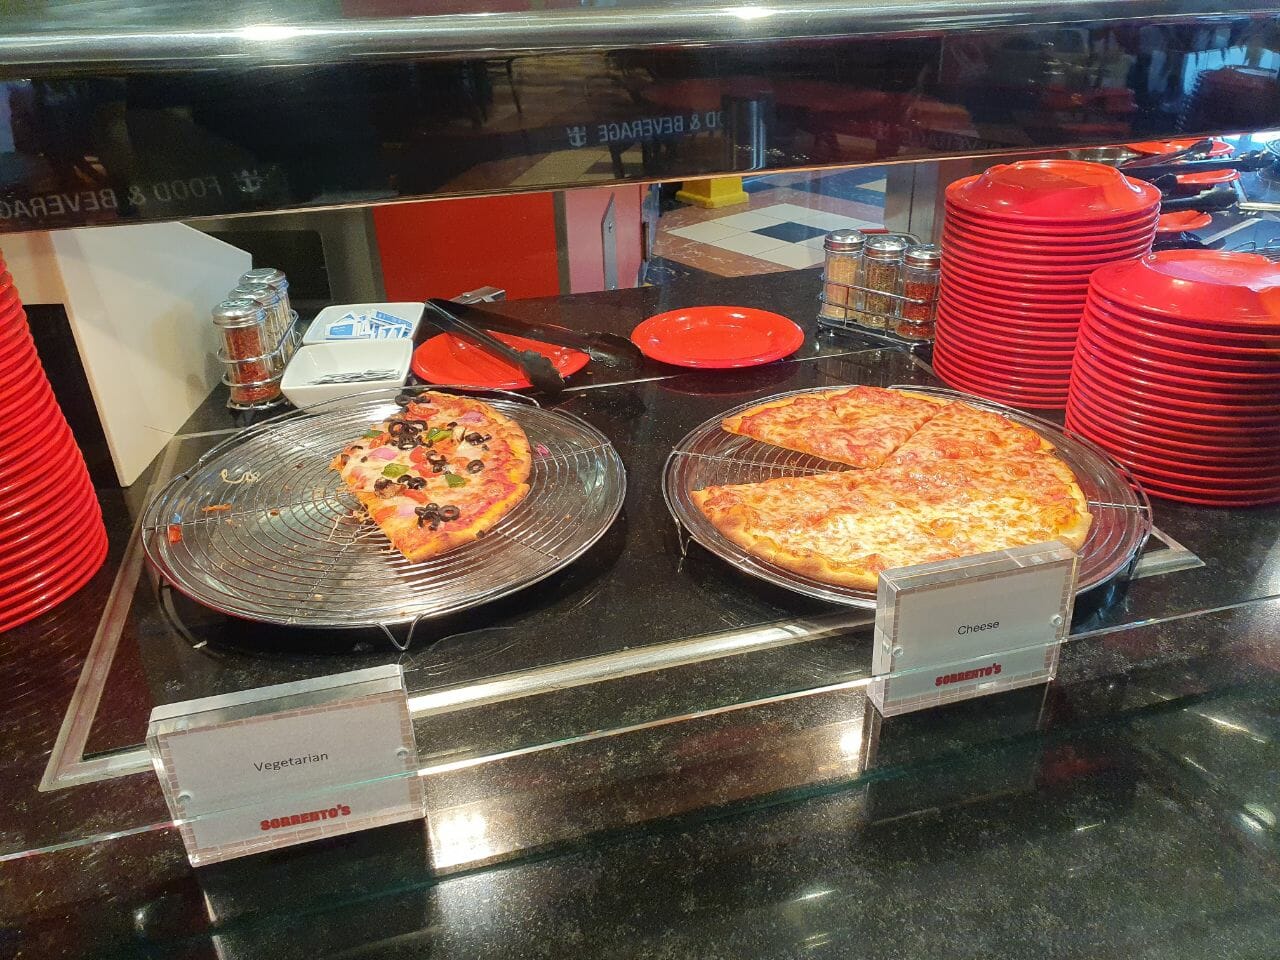 Sorrento's pizza